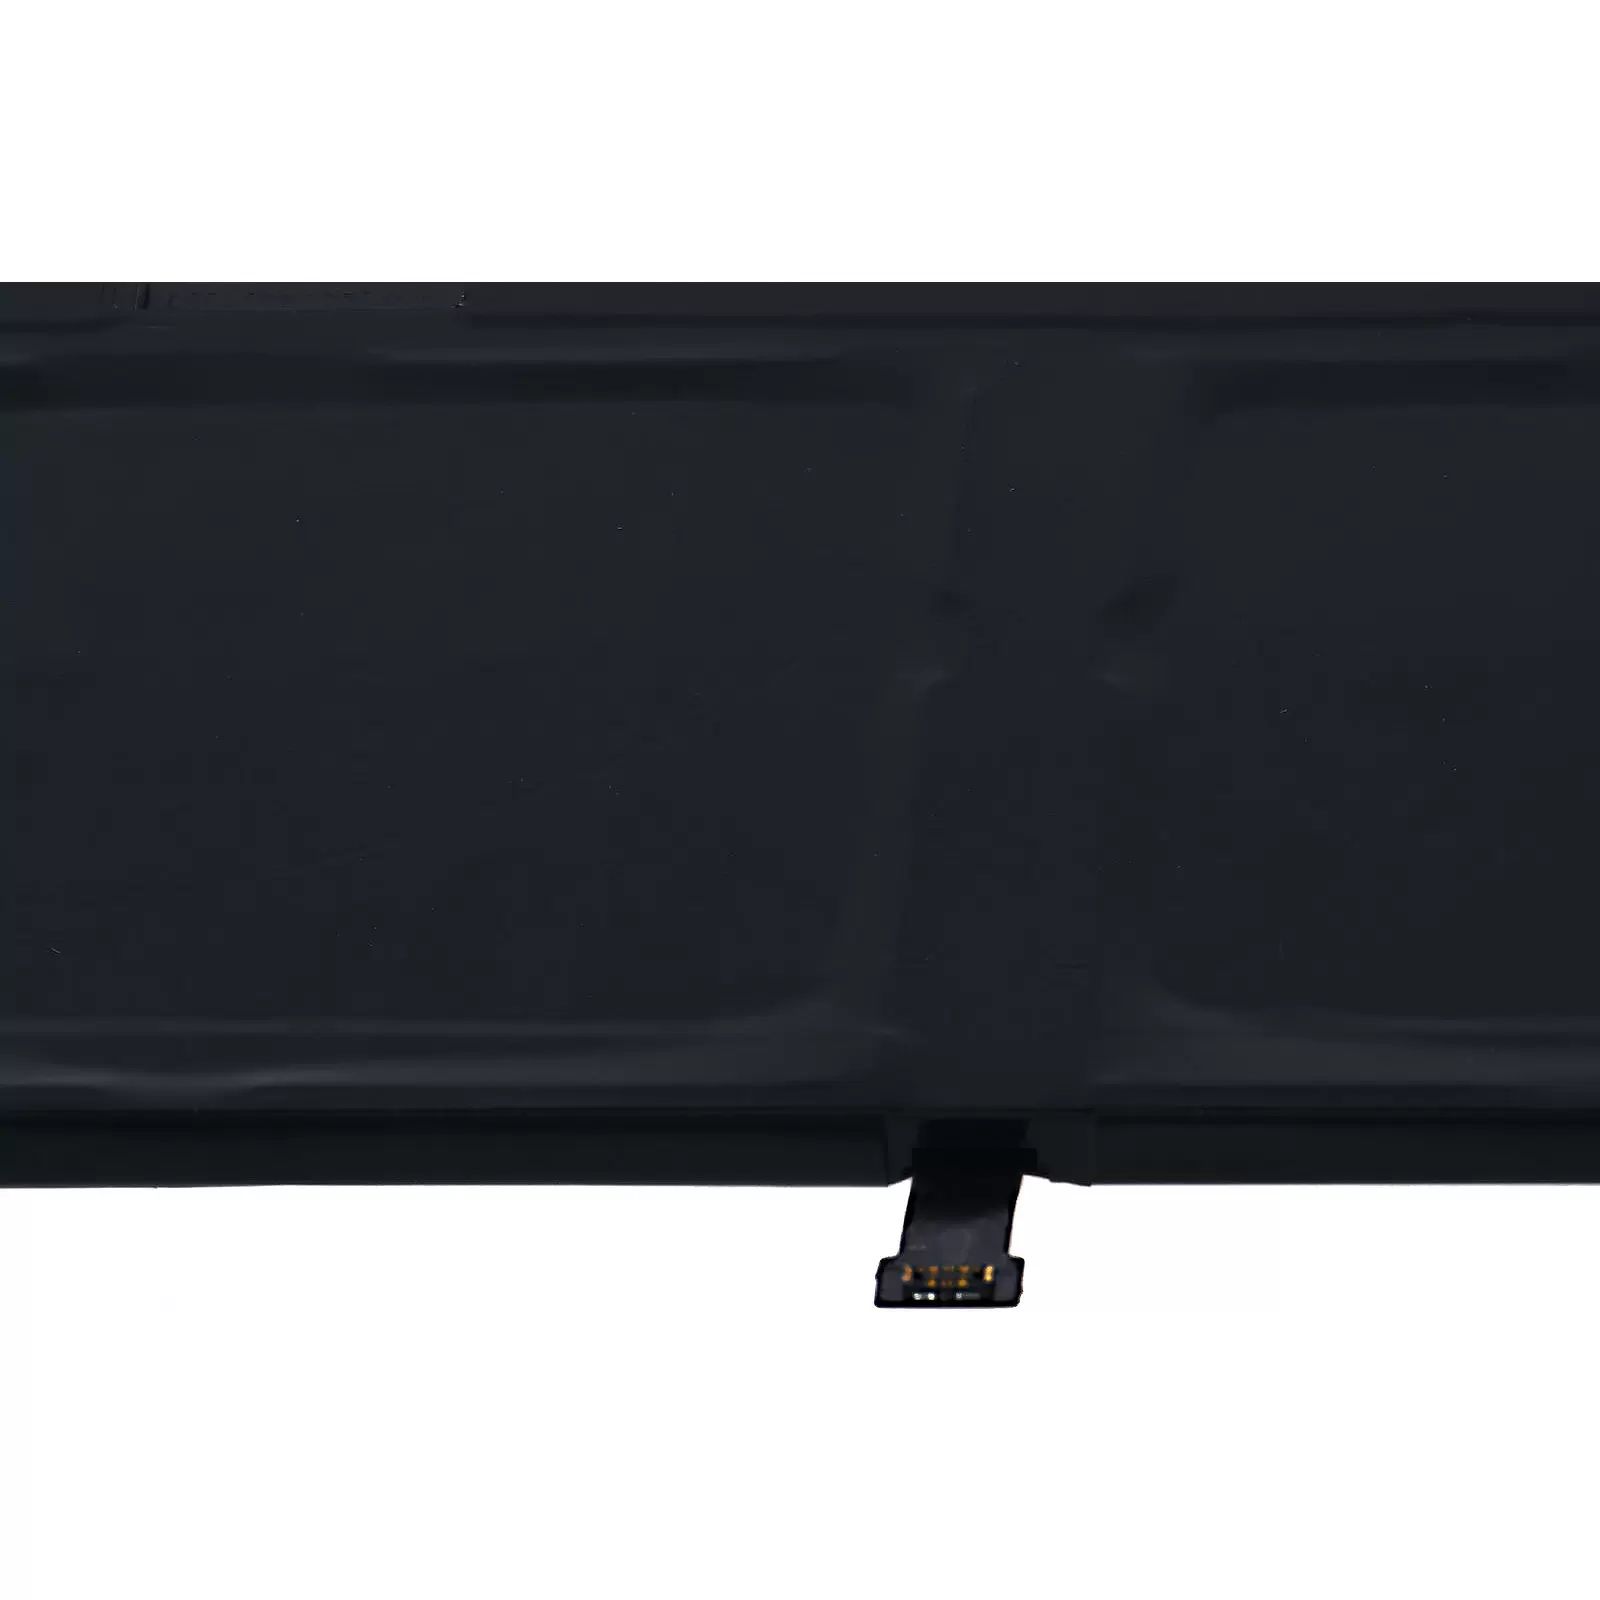 Akku passend für Laptop Razer Blade Stealth 2016 / RZ09-01962 / Typ RC30-0196 u.a. - 11,4V - 4550 mAh